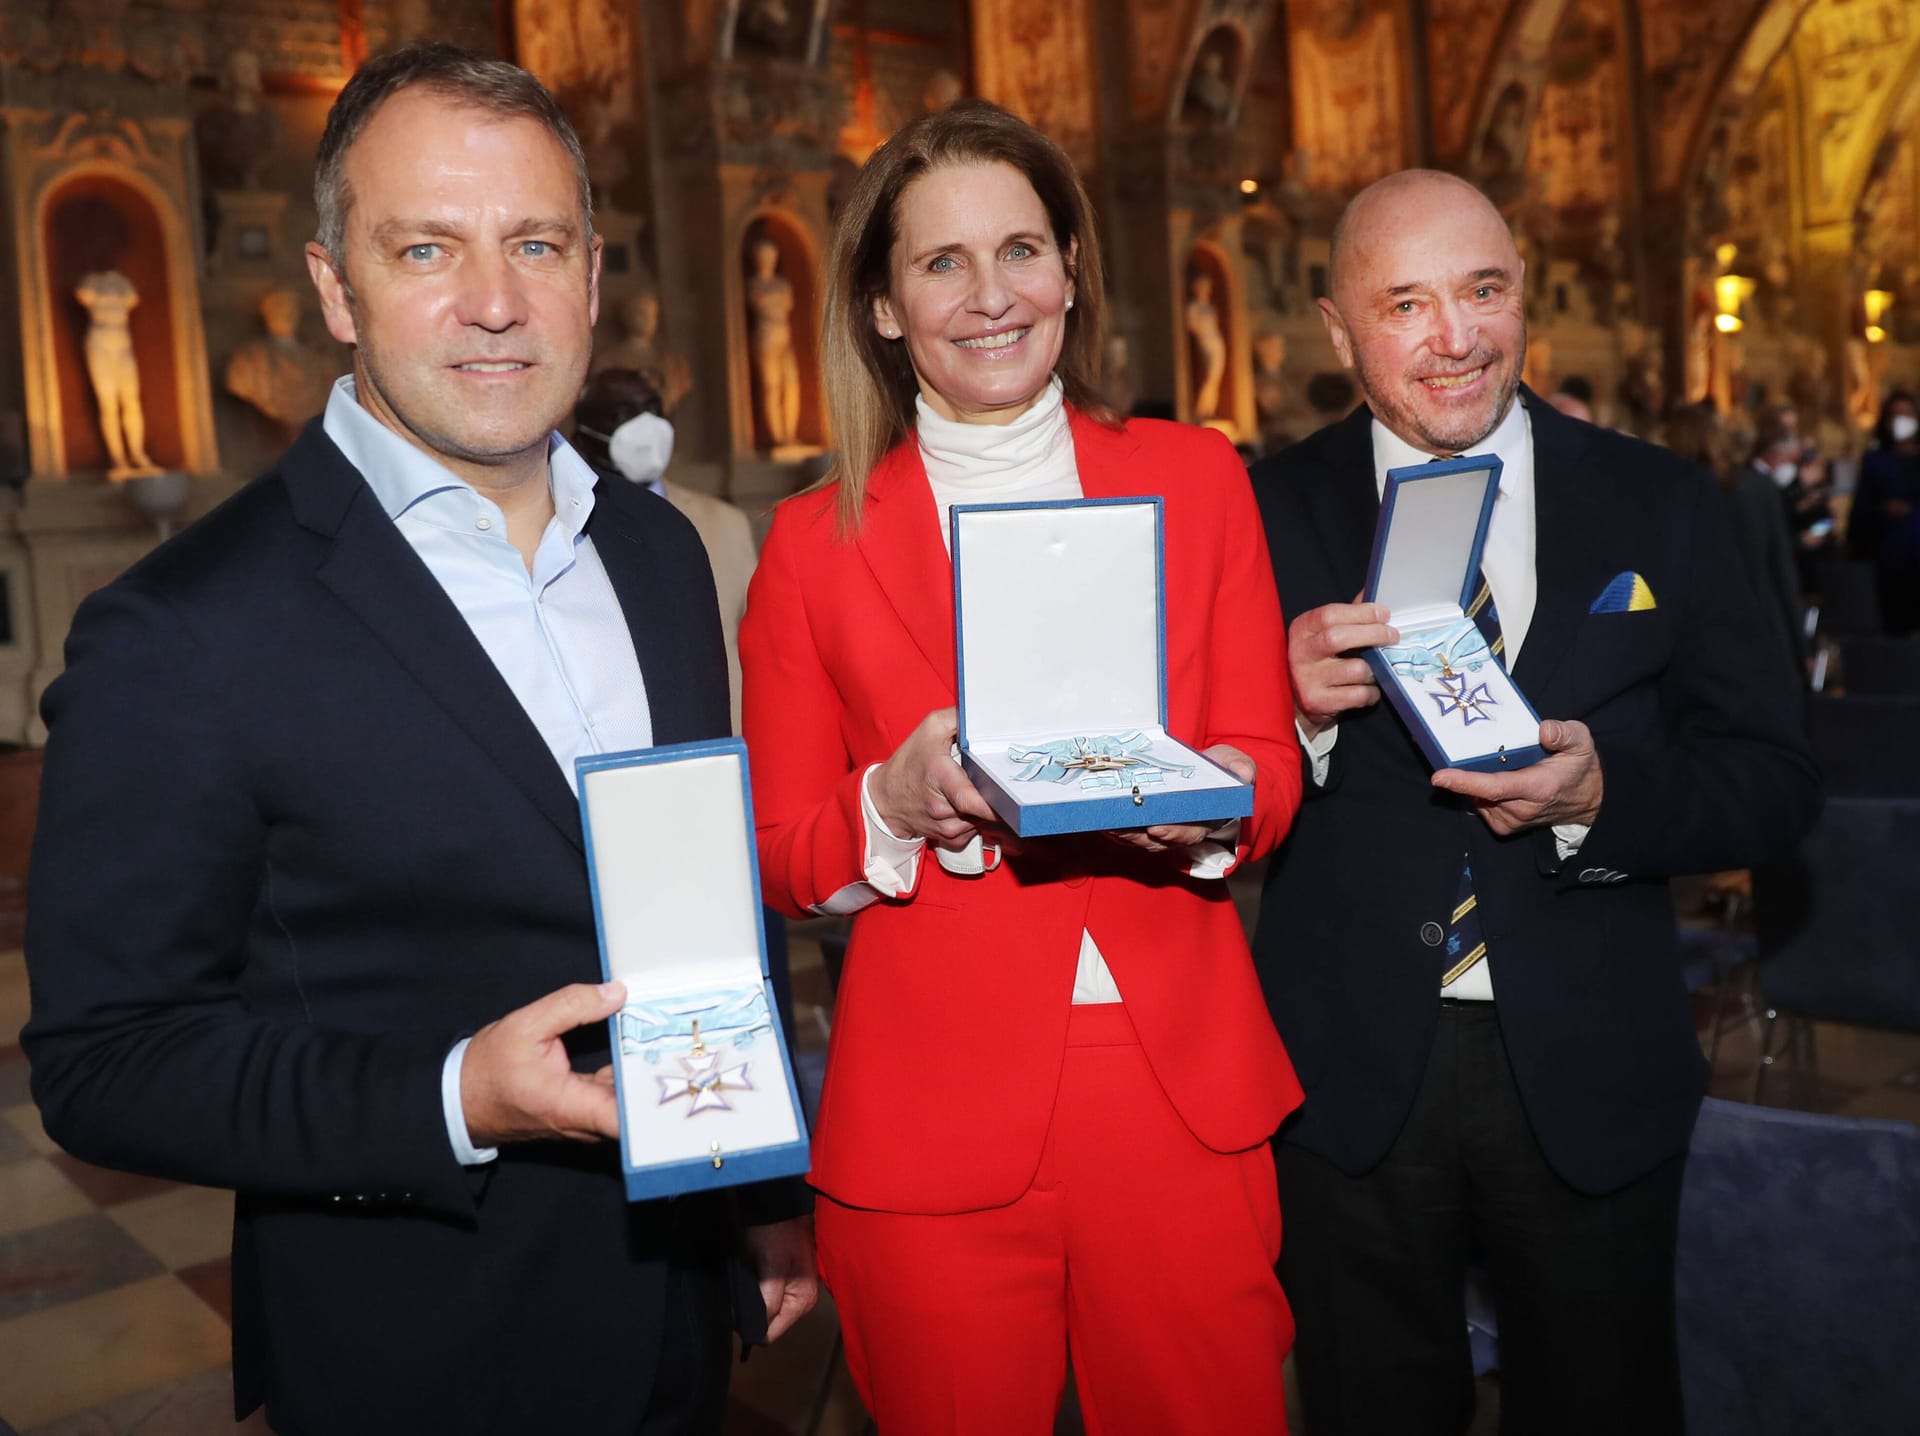 Verleihung des Bayerischen Verdienstordens: Hansi Flick, Katrin Müller-Hohenstein und Christian Neureuther zeigen stolz ihre Auszeichnung.